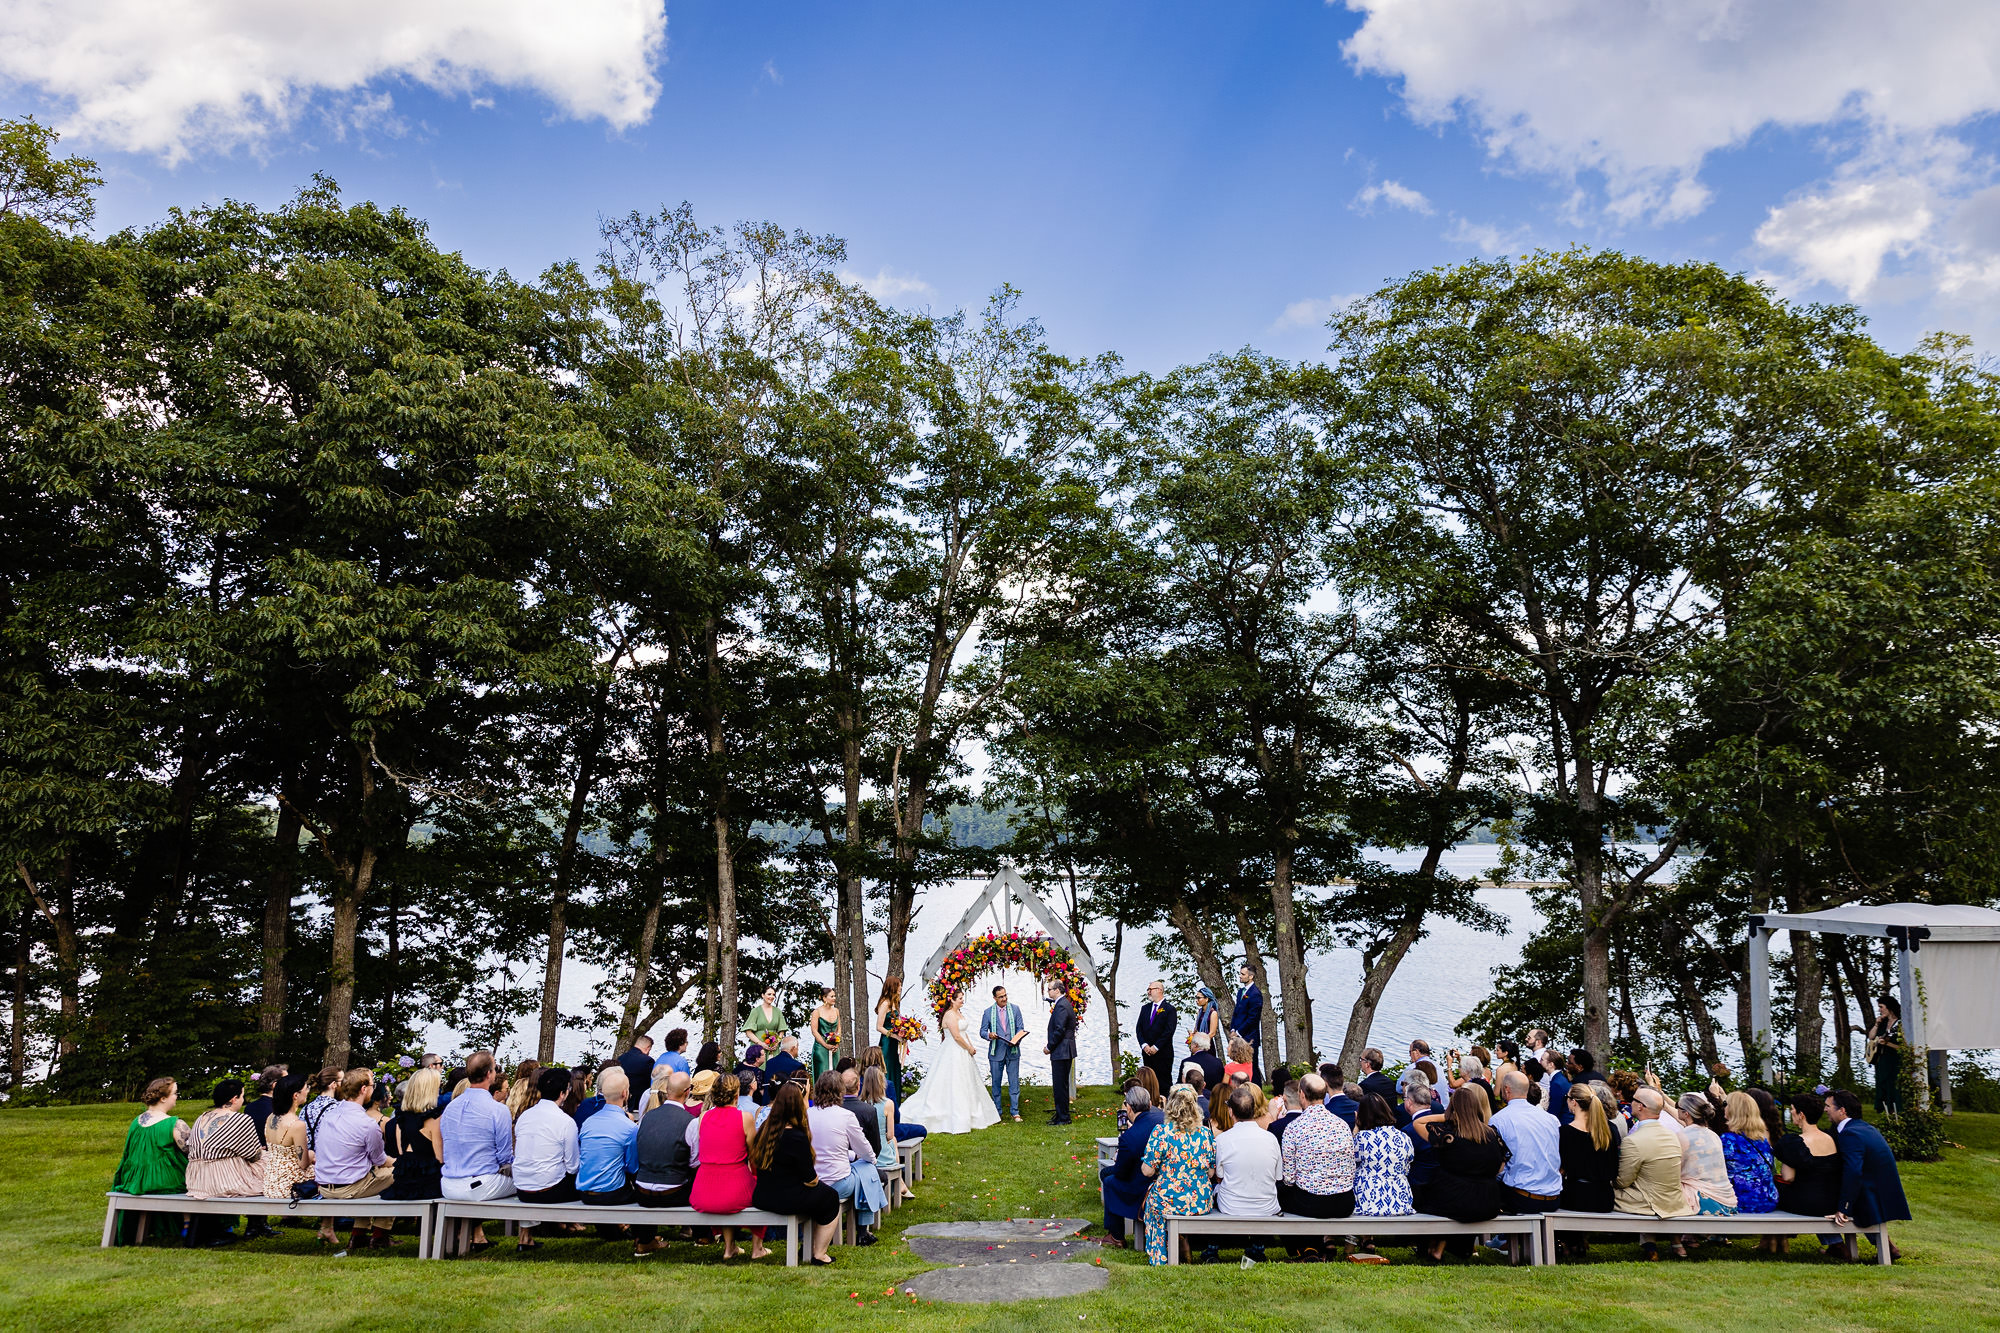 A garden wedding ceremony in Maine